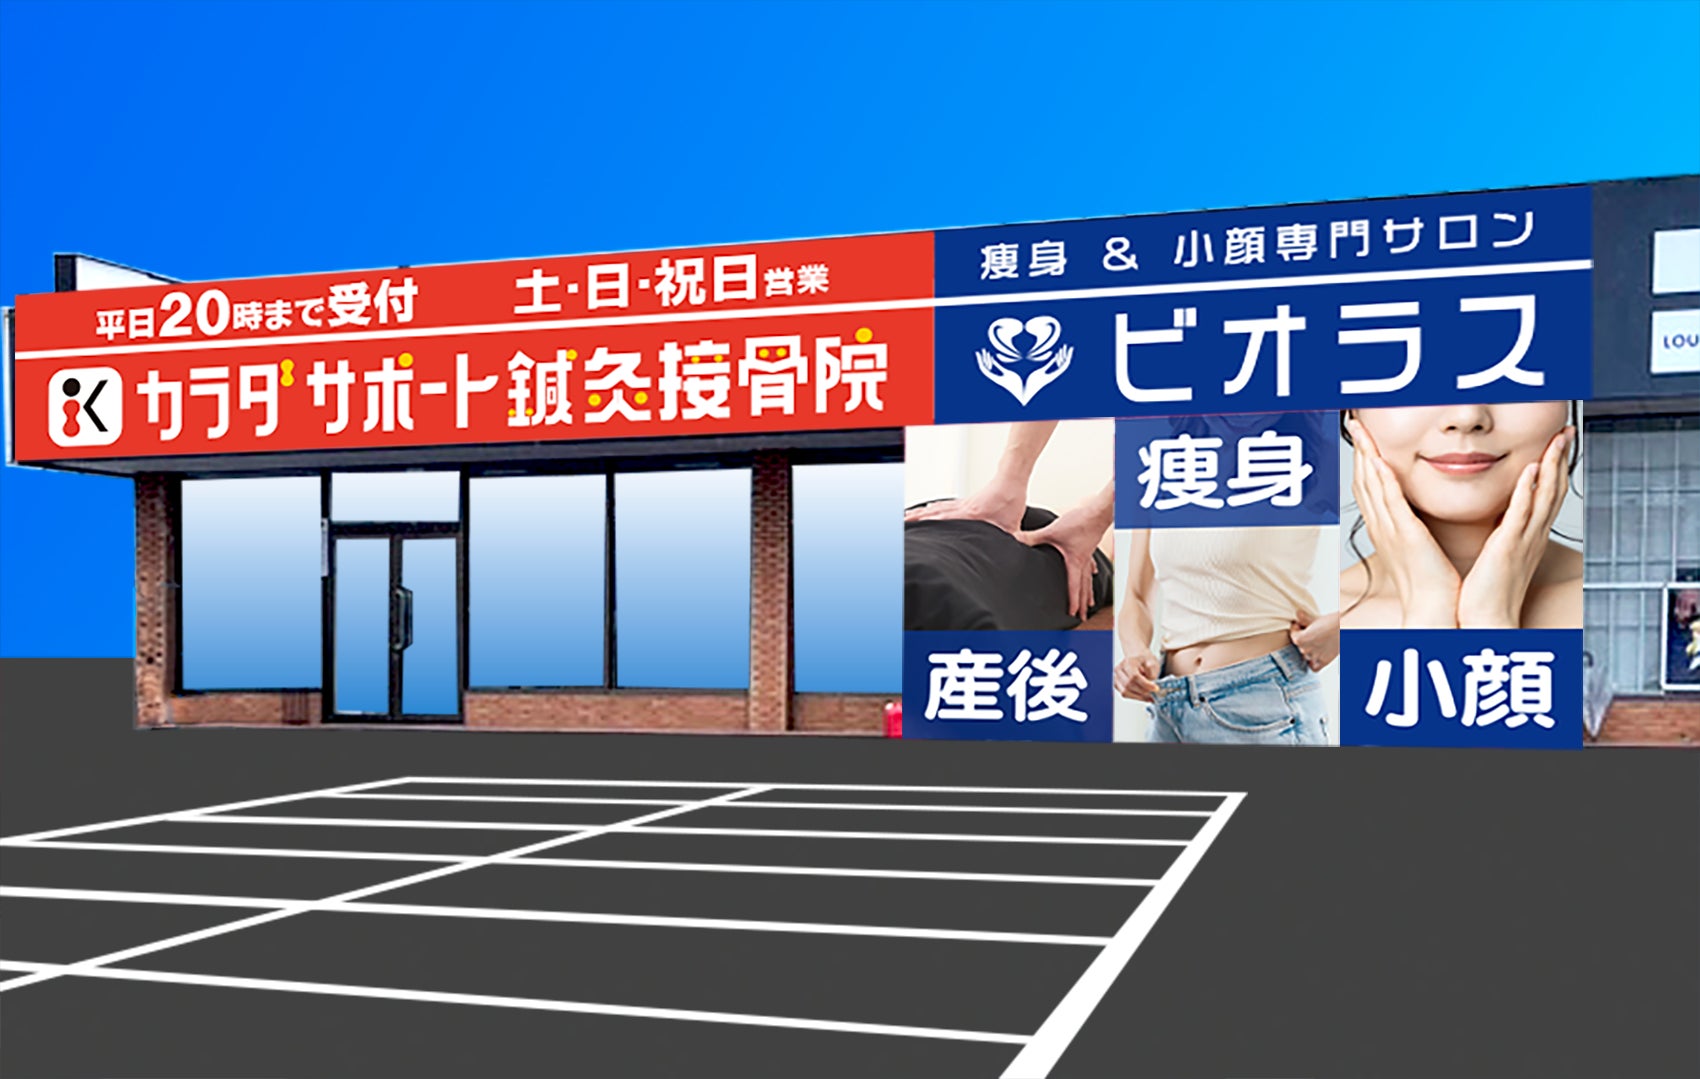 調剤薬局を運営する株式会社エフアンドエフが栃木県内3市と
気候変動適応法に基づくクーリングシェルターに関する協定を締結